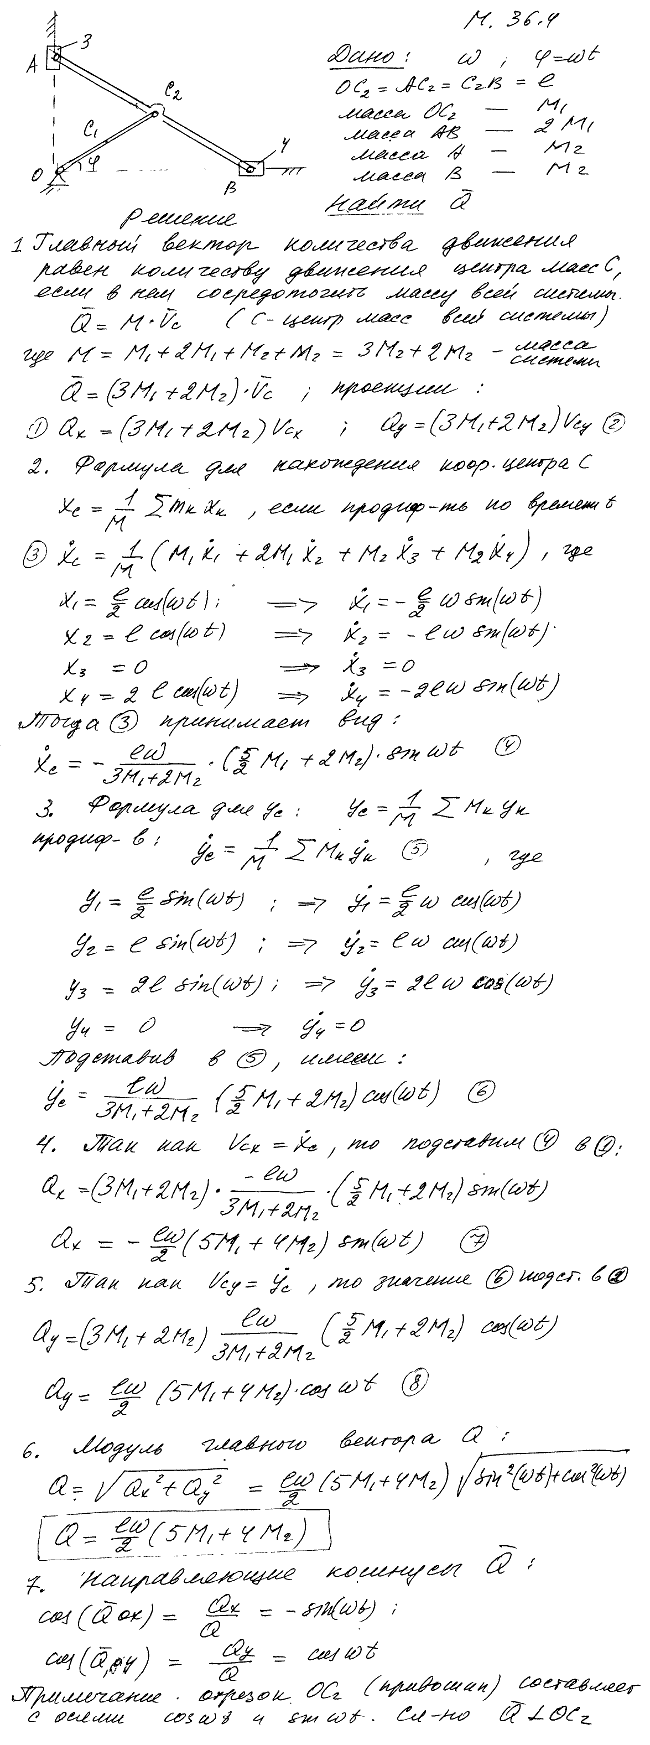 Определить модуль и направление главного вектора количеств движения механизма эллипсографа, если масса кривошипа равна M1, масса линейки AB эллипсографа